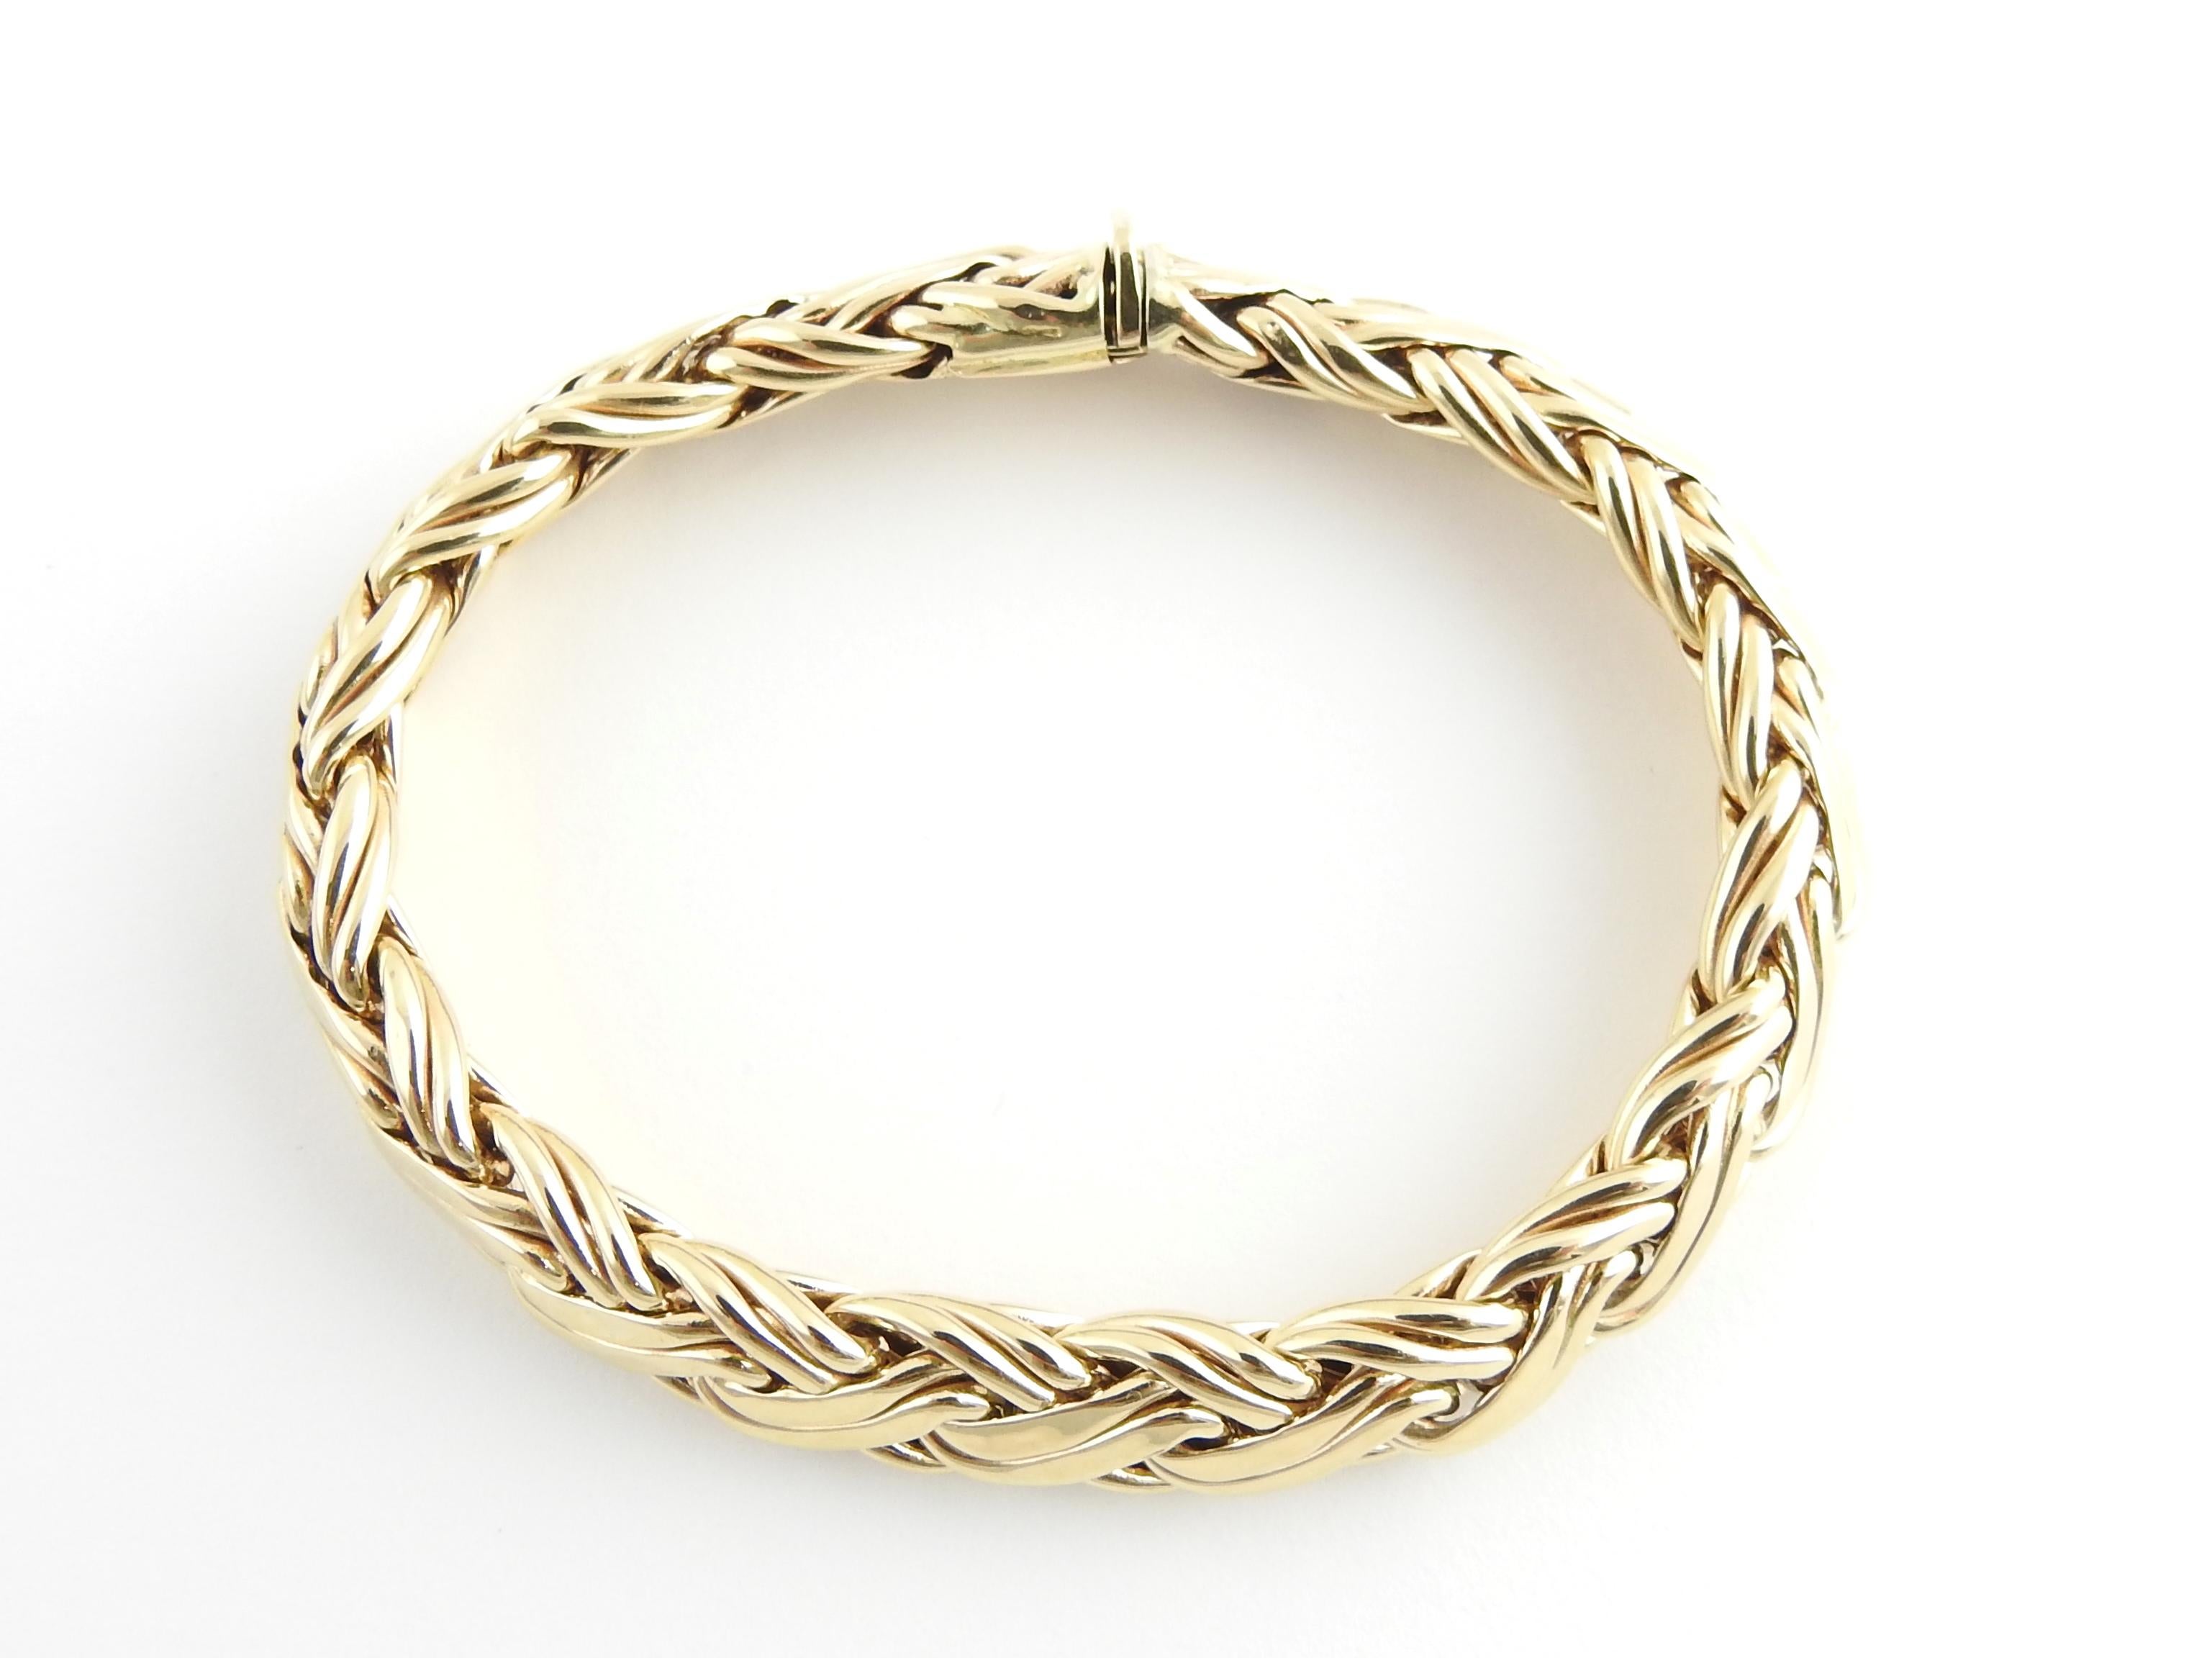 russian gold bracelet